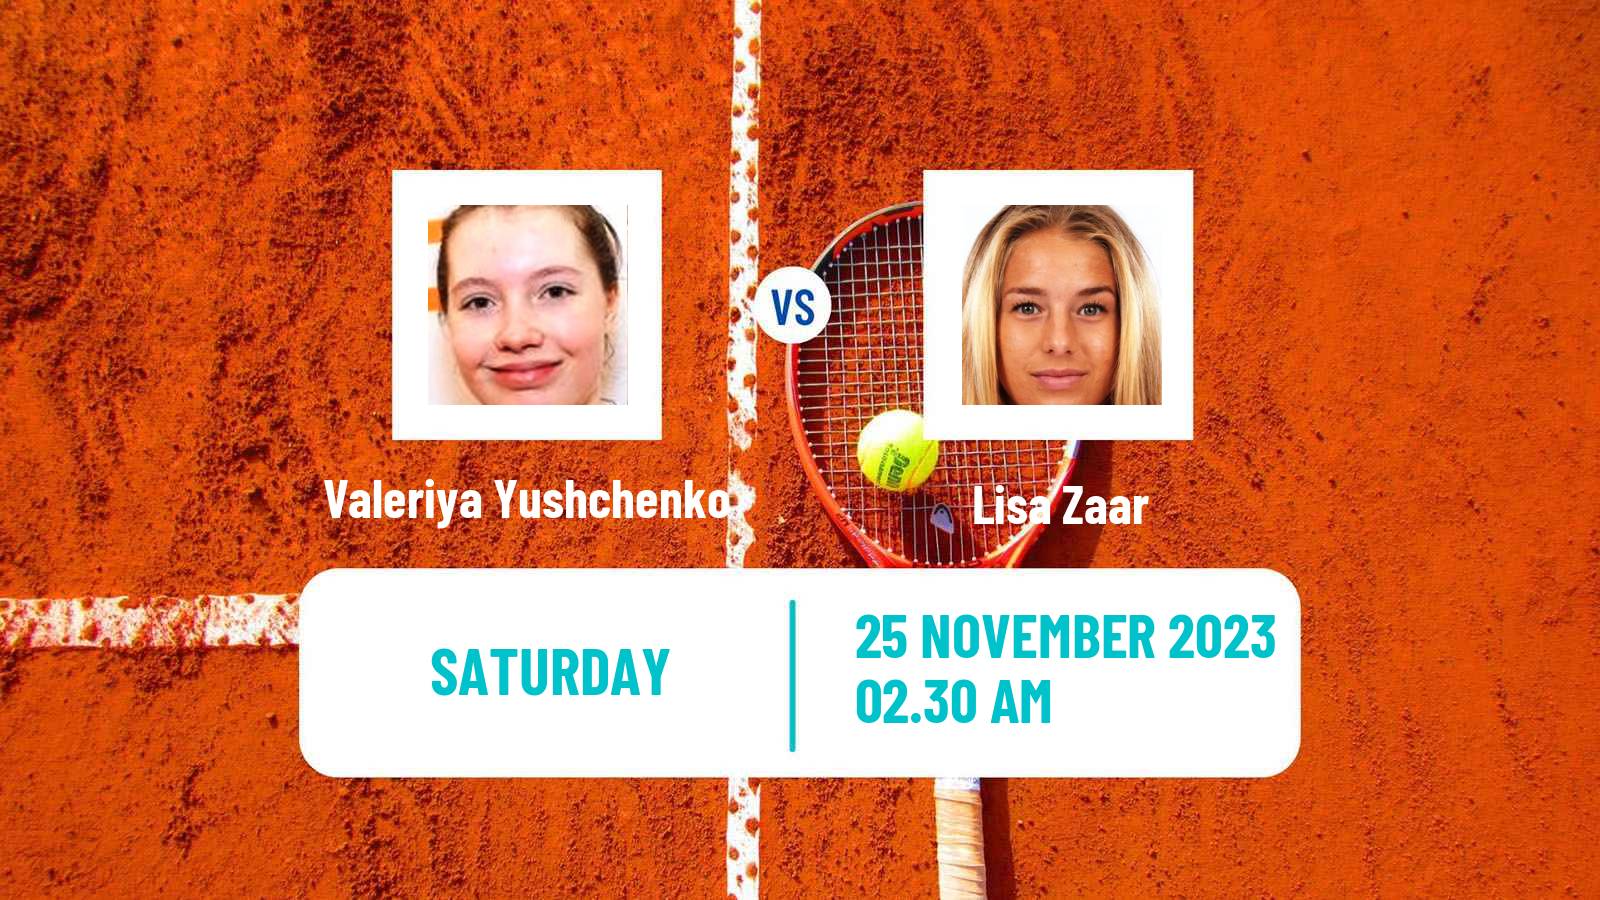 Tennis ITF W15 Antalya 19 Women Valeriya Yushchenko - Lisa Zaar